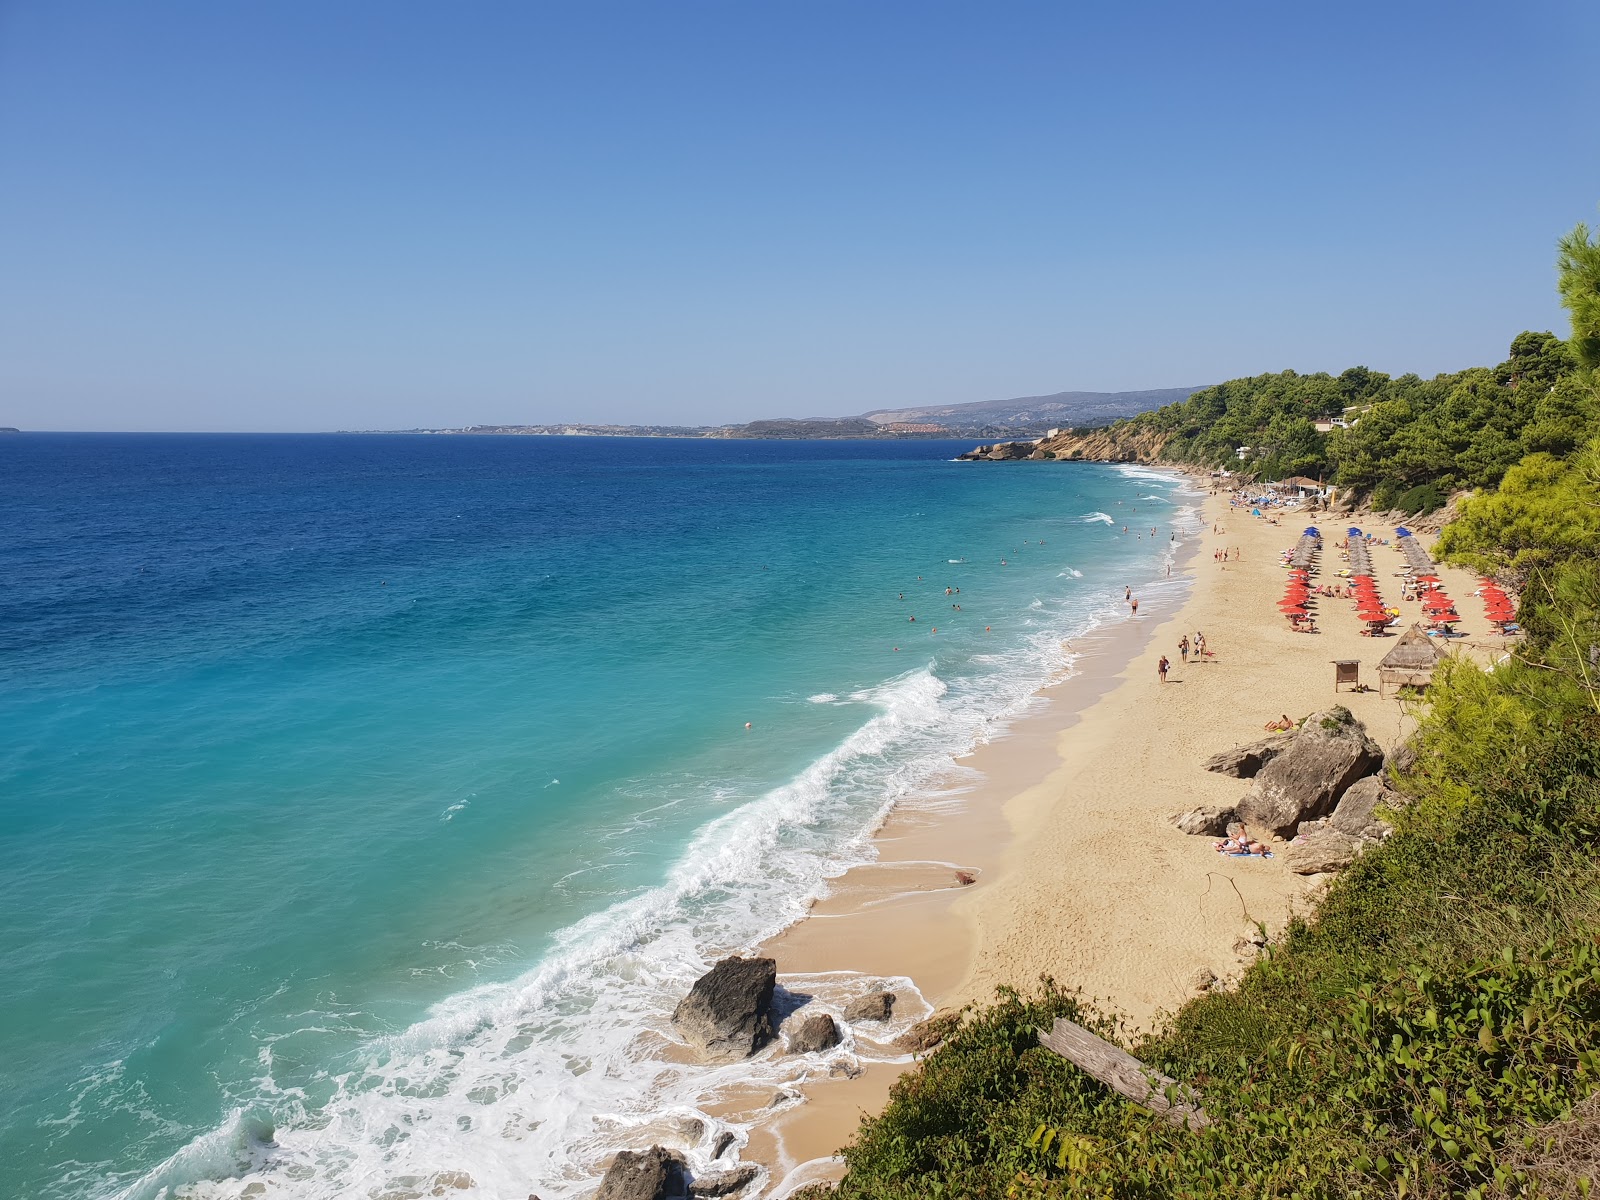 Makris Gialos Plajı'in fotoğrafı i̇nce kahverengi kum yüzey ile